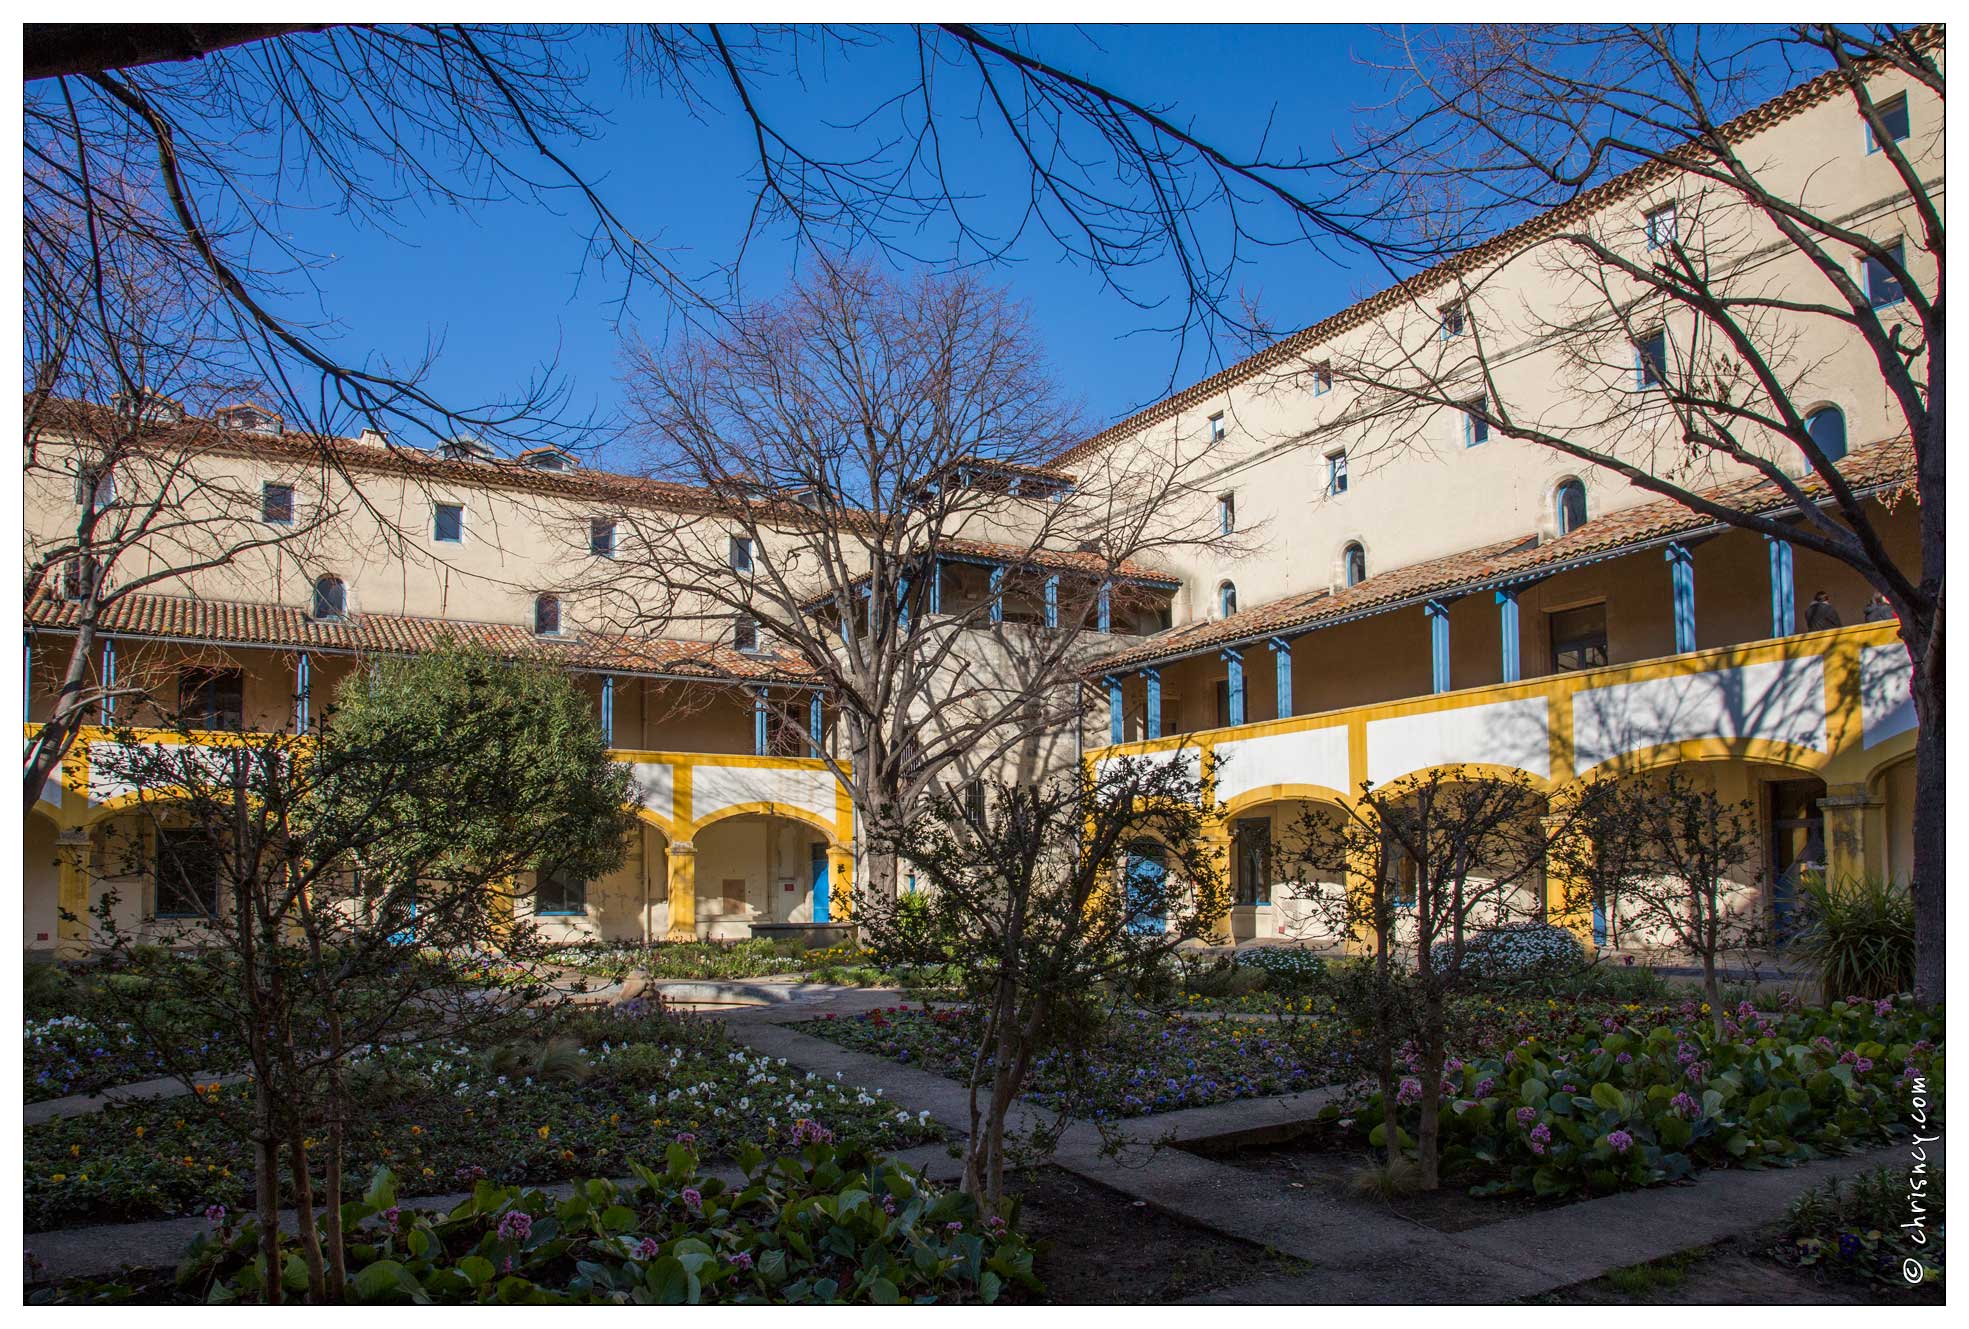 20160121-63_6479-Arles_Hotel_Dieu_Maison_de_la_Sante_Van_Gogh.jpg